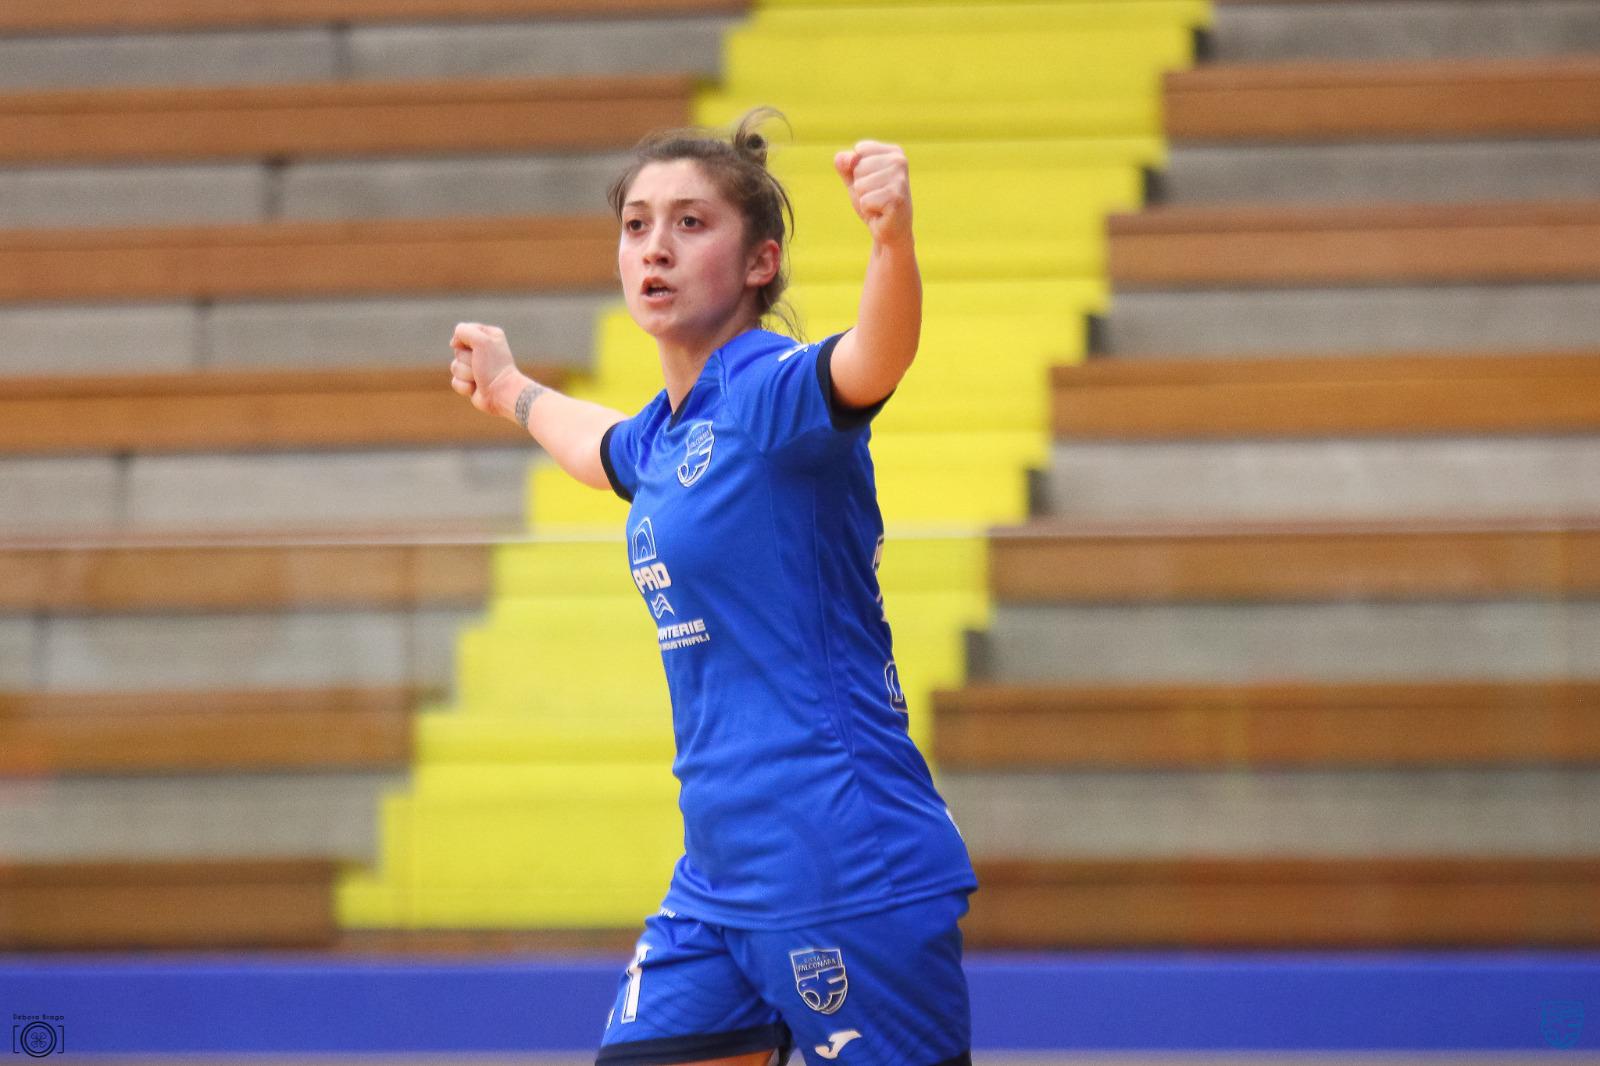 Futsal Femminile Cagliari –  Città di Falconara 2-6 | 10a Serie A femminile 20-21